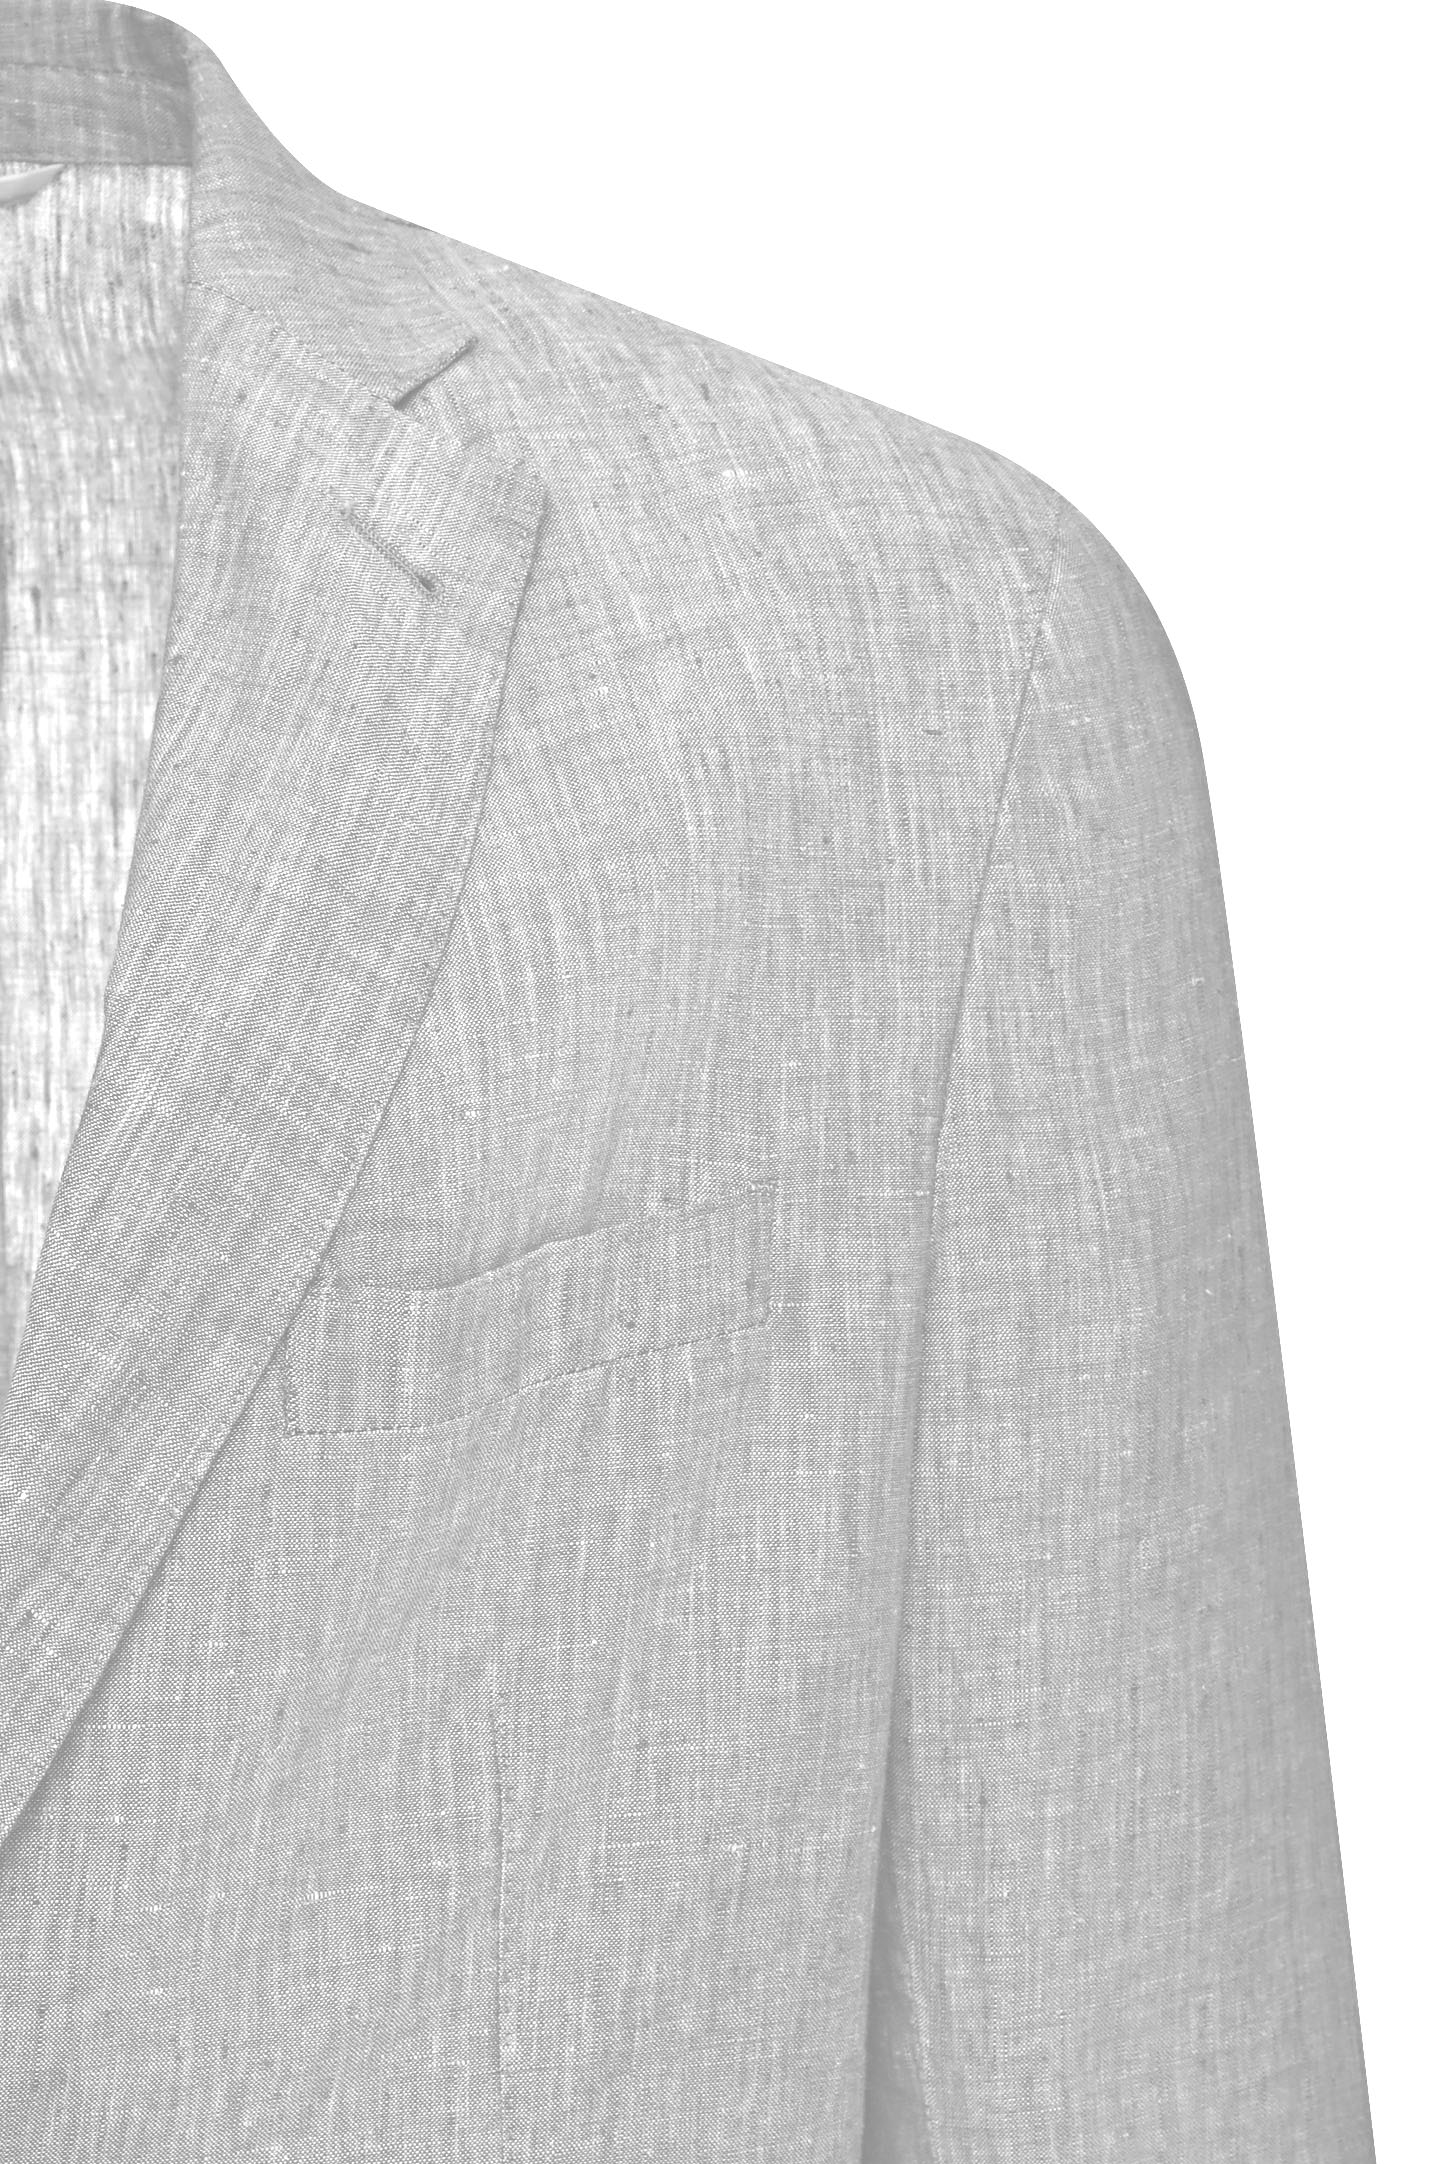 Пиджак DORIANI CASHMERE C138/269LAV-7-S, цвет: Серый, Мужской